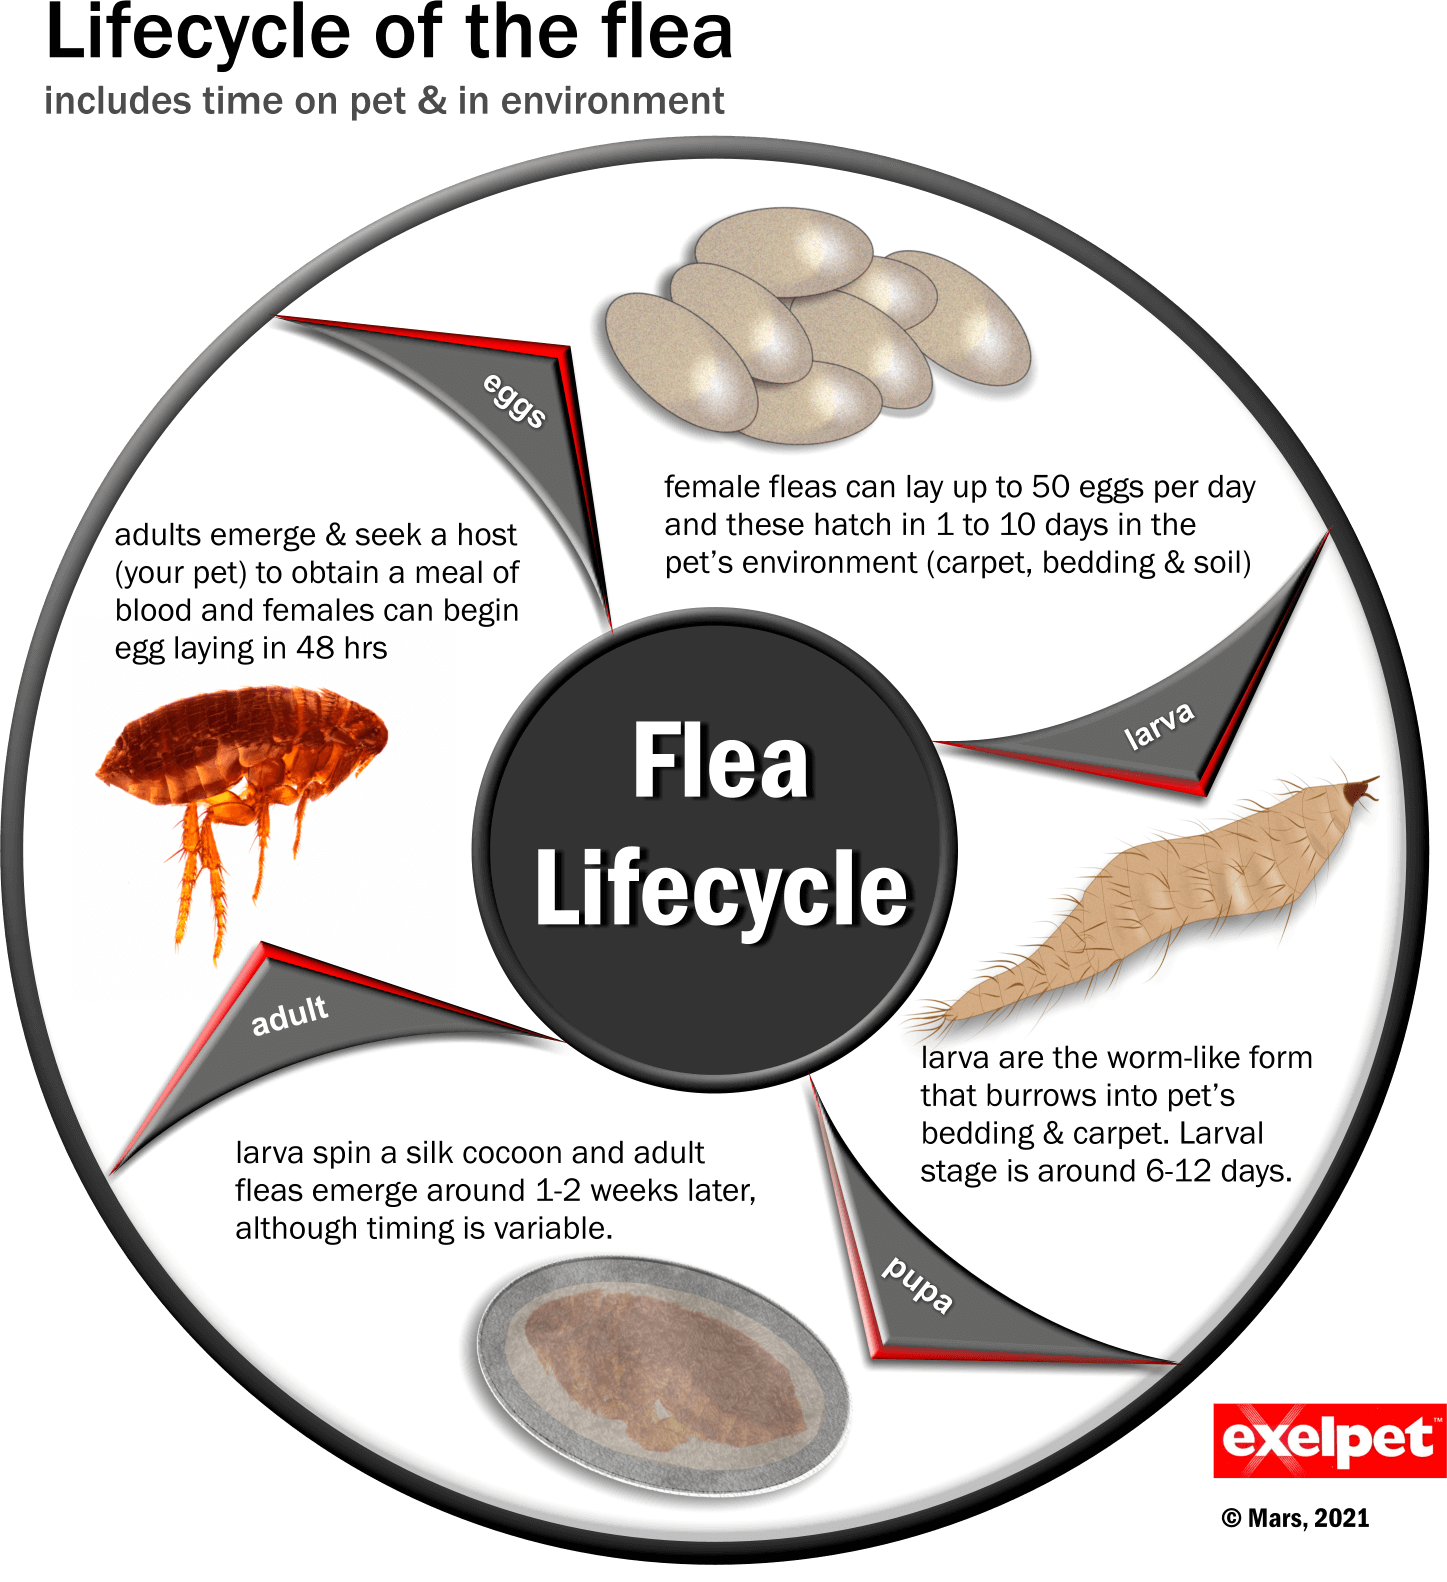 Flea lifecycle